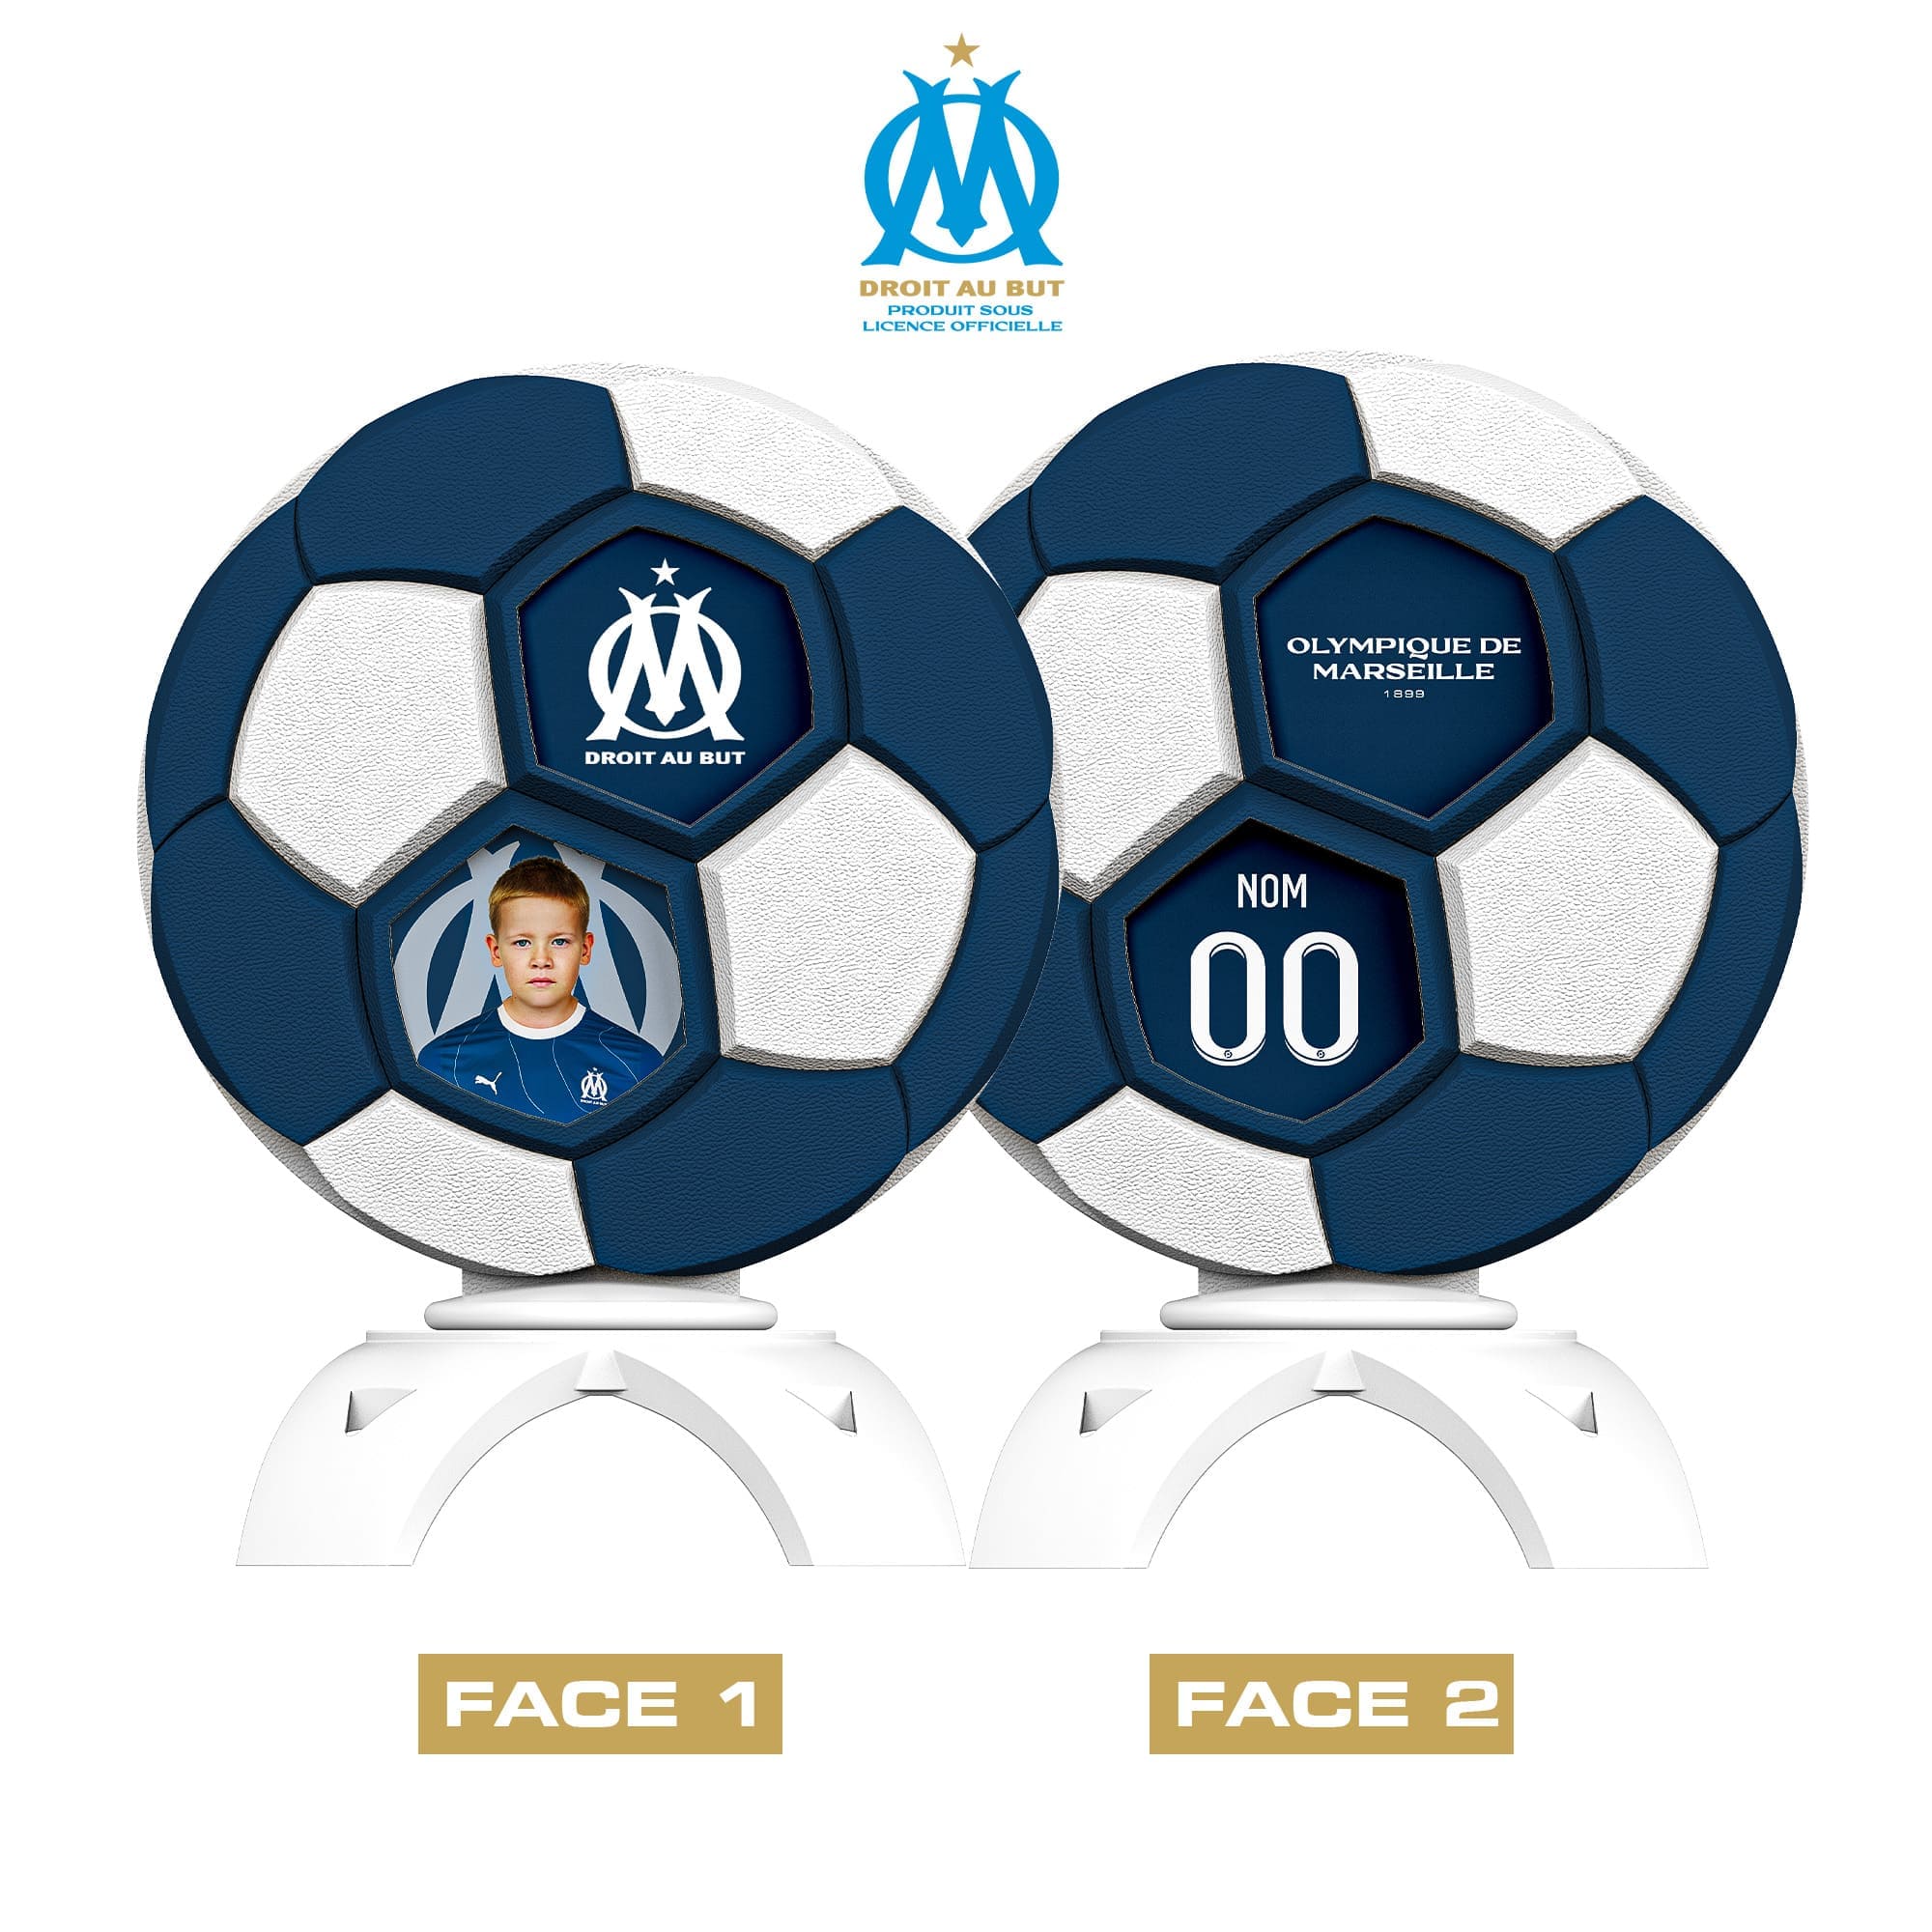 Créez votre trophée sous licence officielle Olympique de Marseille